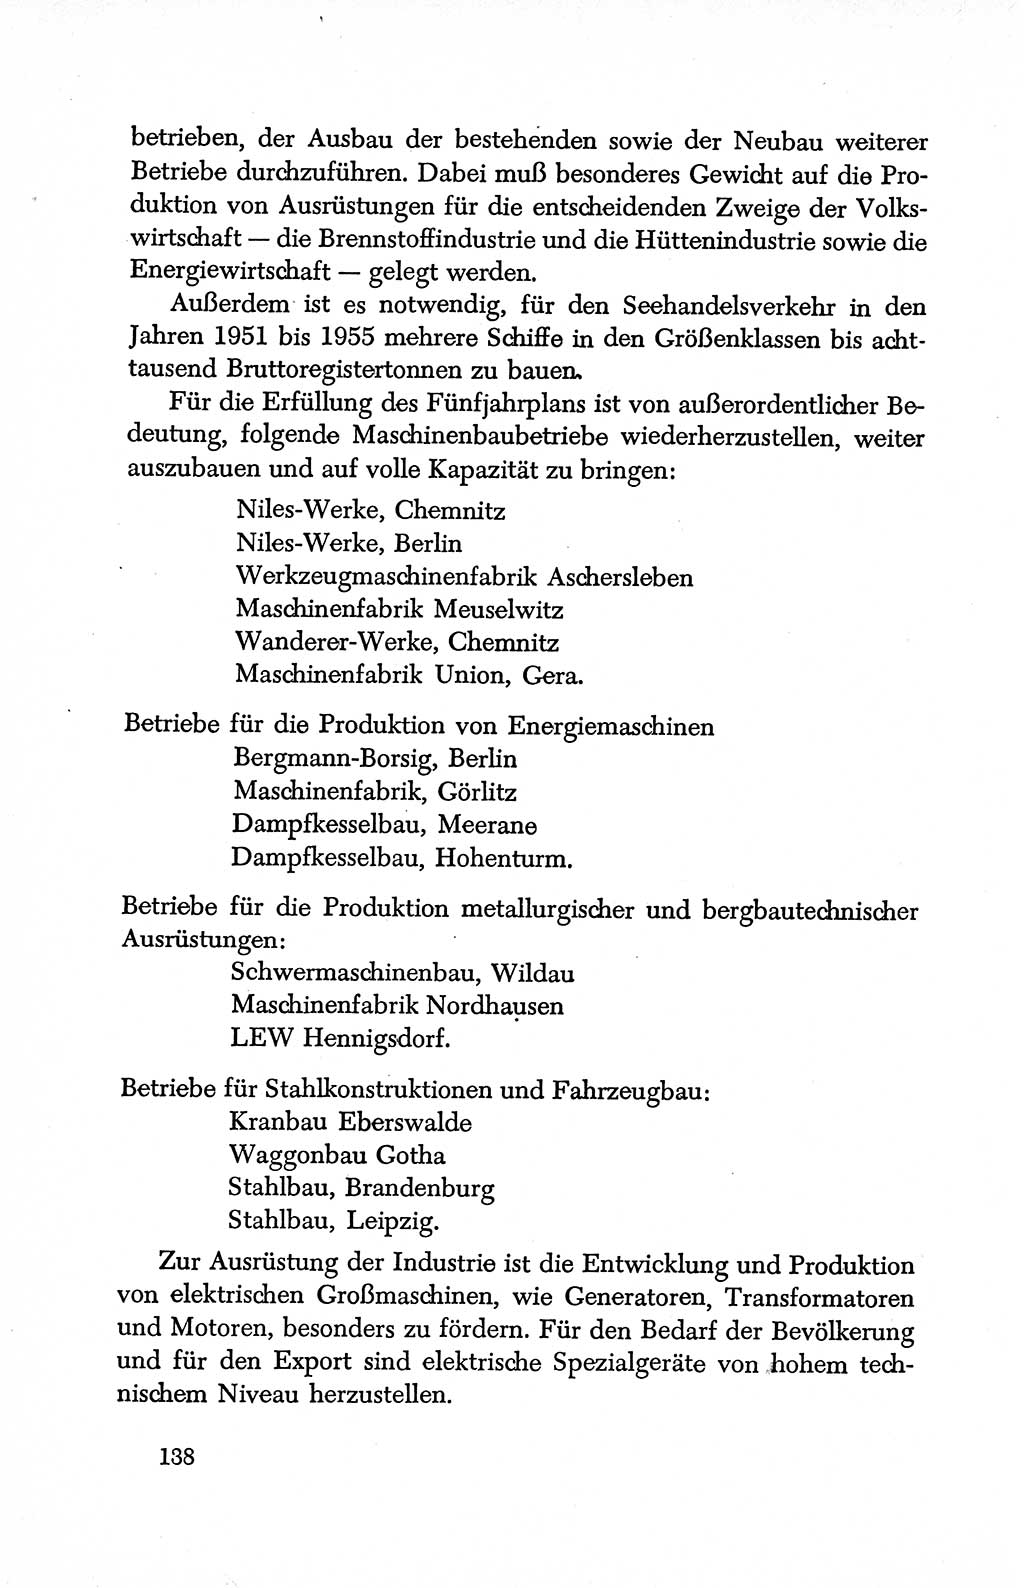 Dokumente der Sozialistischen Einheitspartei Deutschlands (SED) [Deutsche Demokratische Republik (DDR)] 1950-1952, Seite 138 (Dok. SED DDR 1950-1952, S. 138)